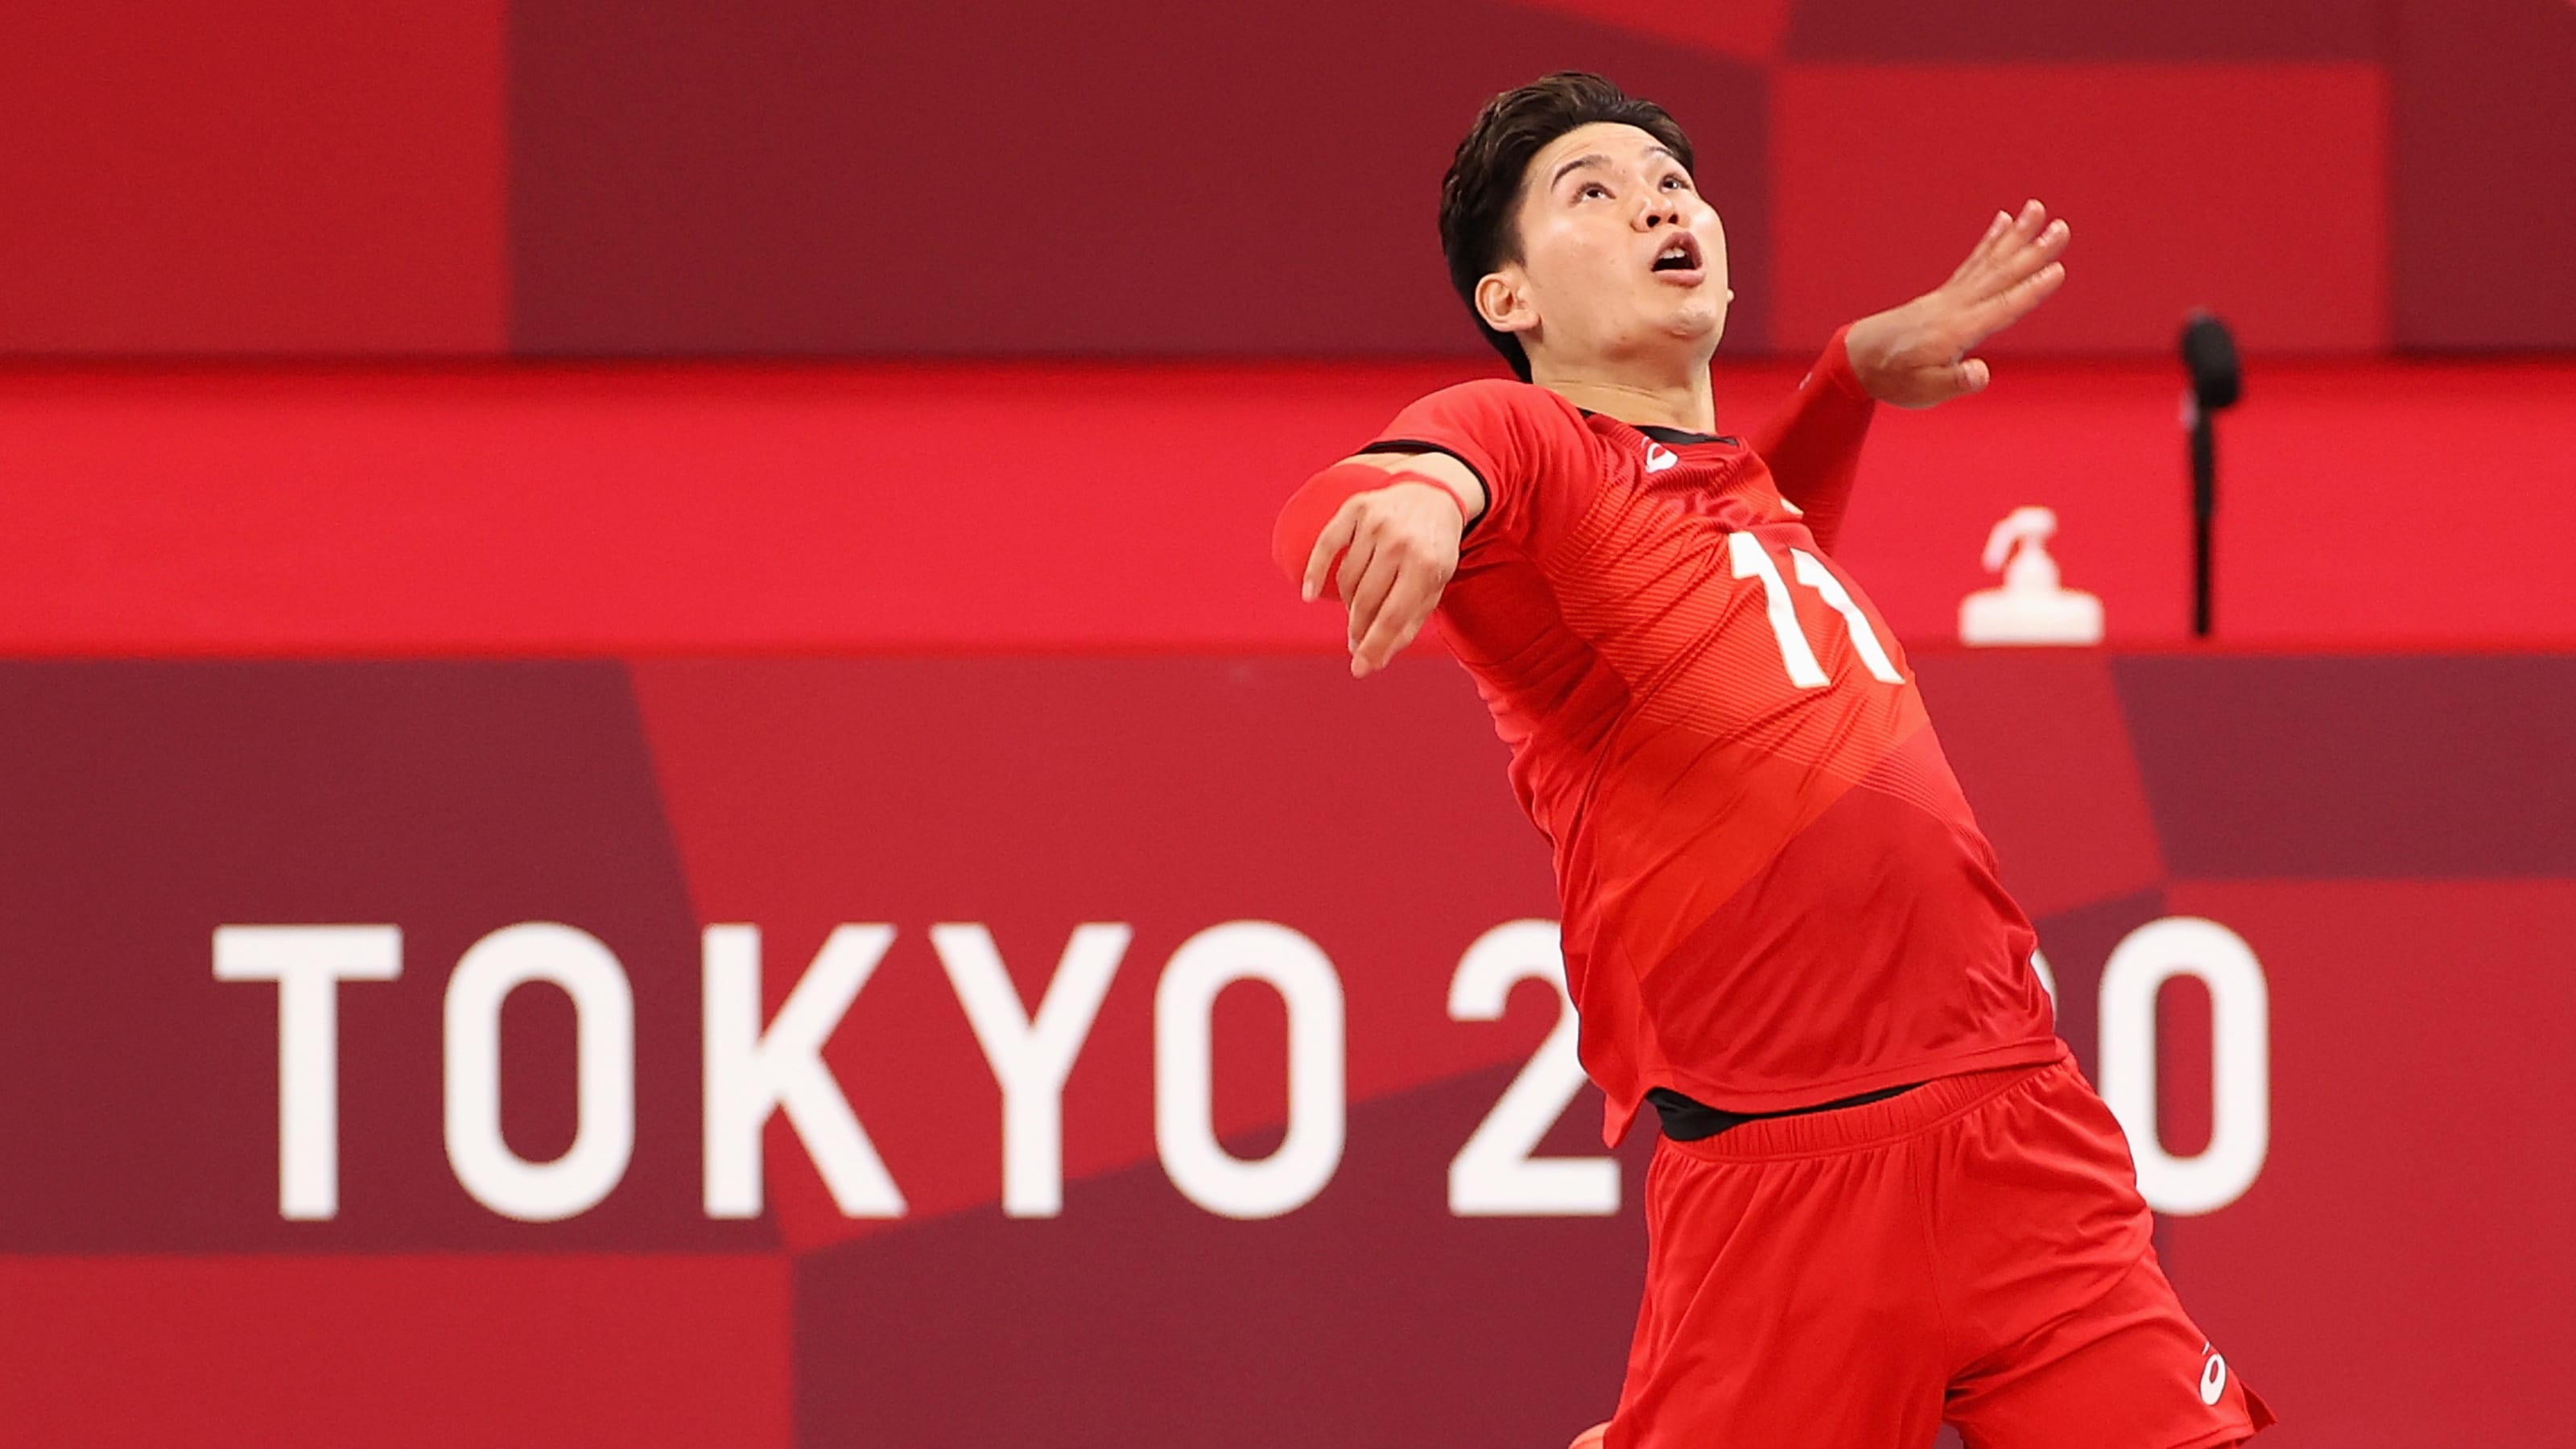 7月30日 東京五輪 男子バレーボールの放送予定 日本代表はポーランド代表と対戦